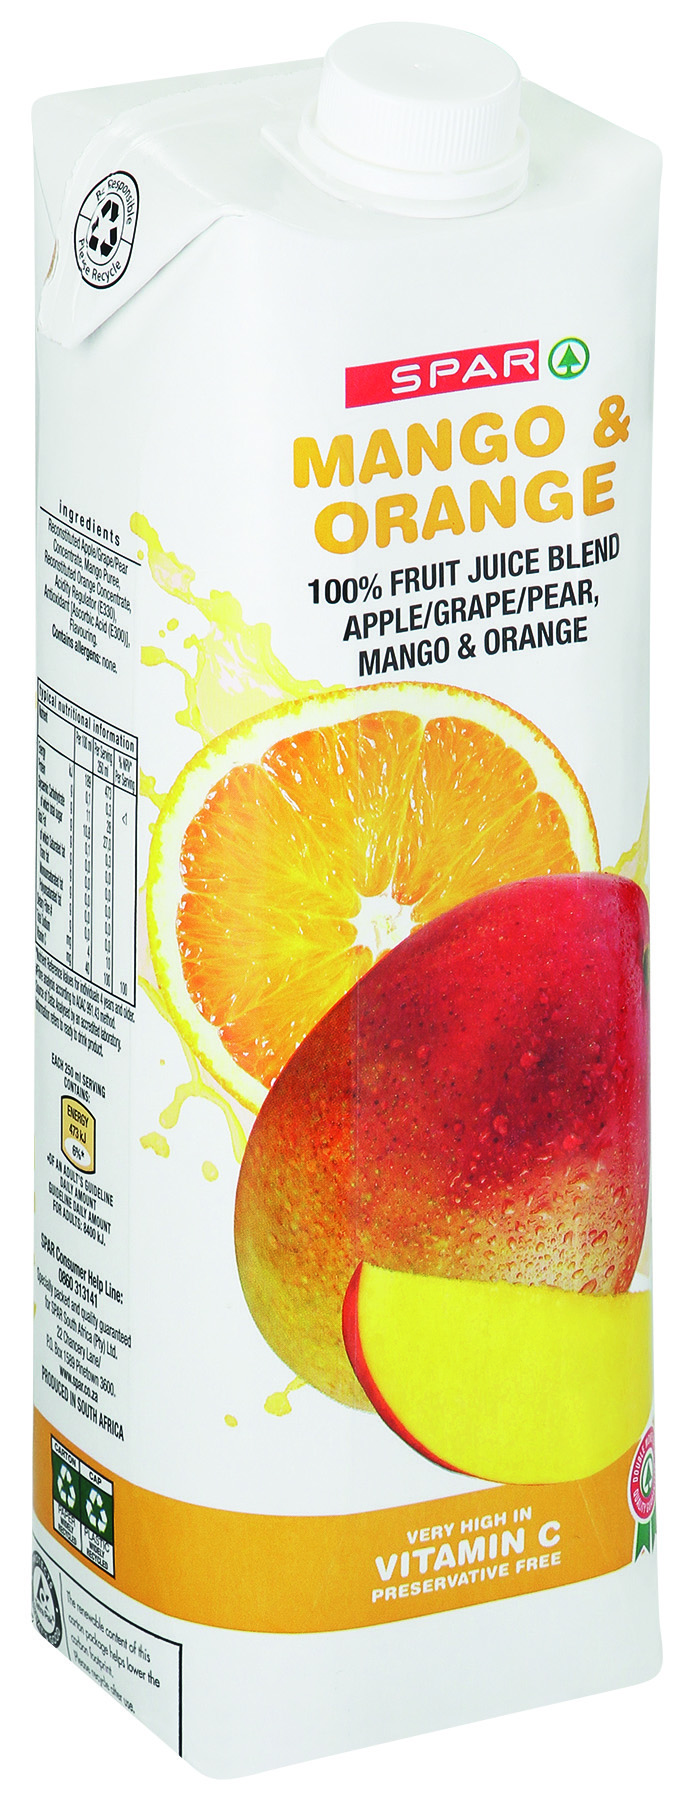 100% fruit juice blend - mango & orange